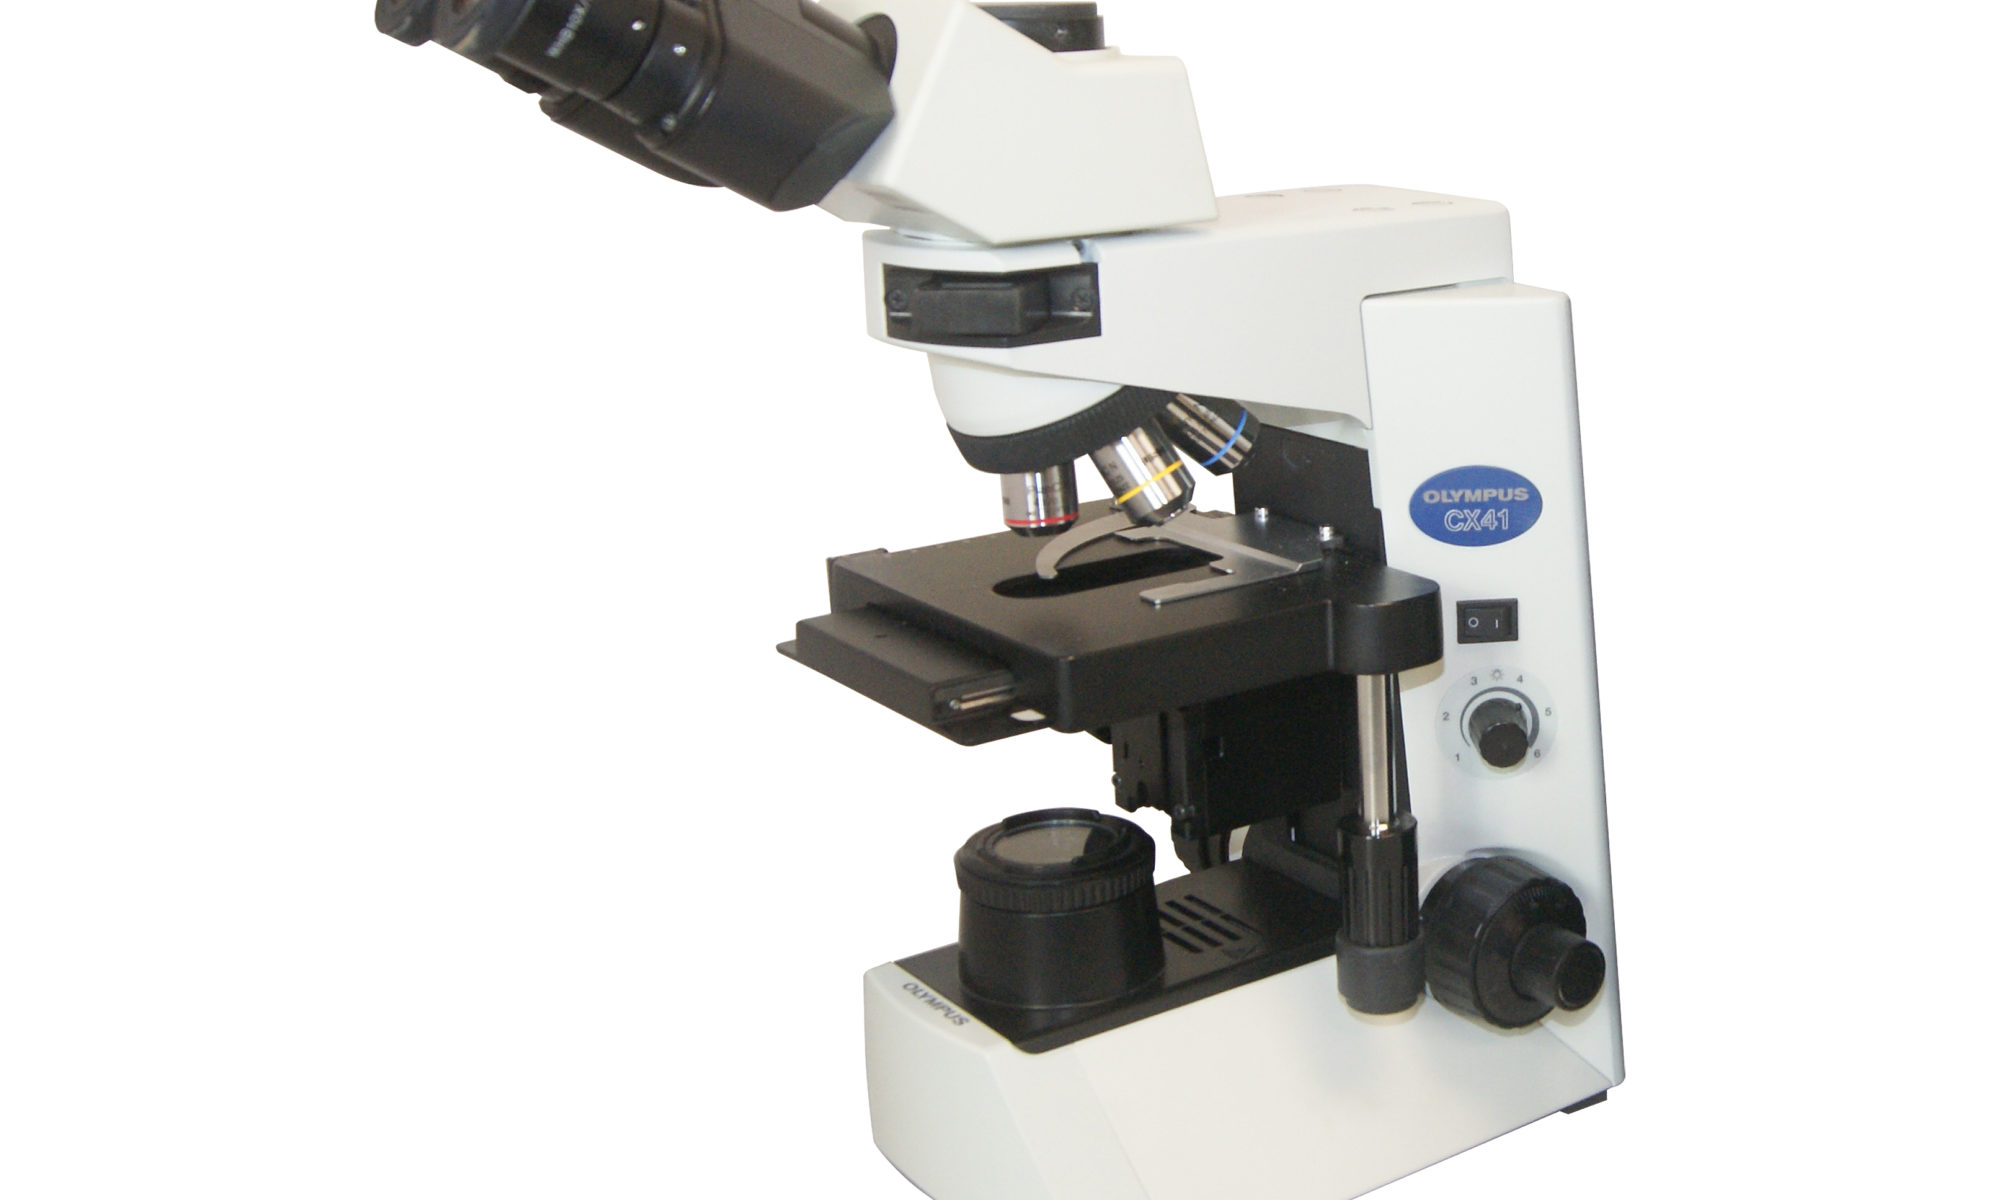 CX41 Microscope